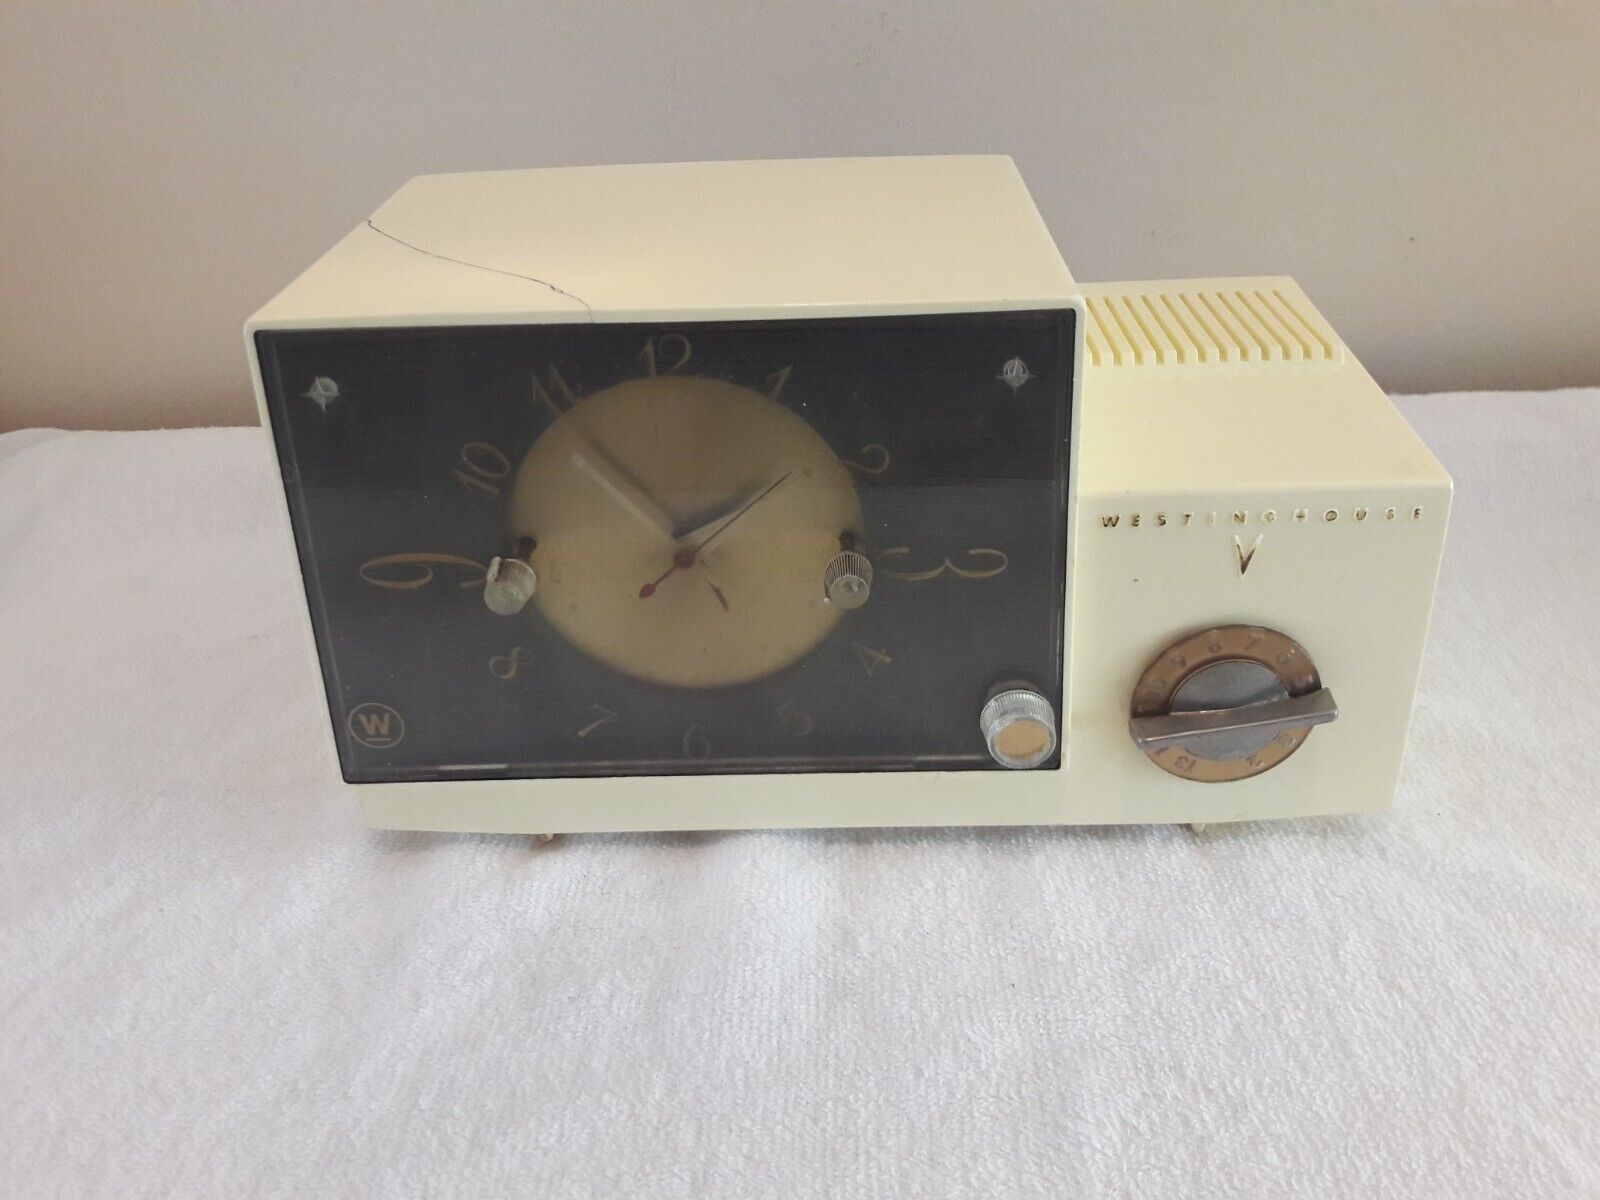 1959 Westinghouse Tube Radio Ivory Model H-583T 5